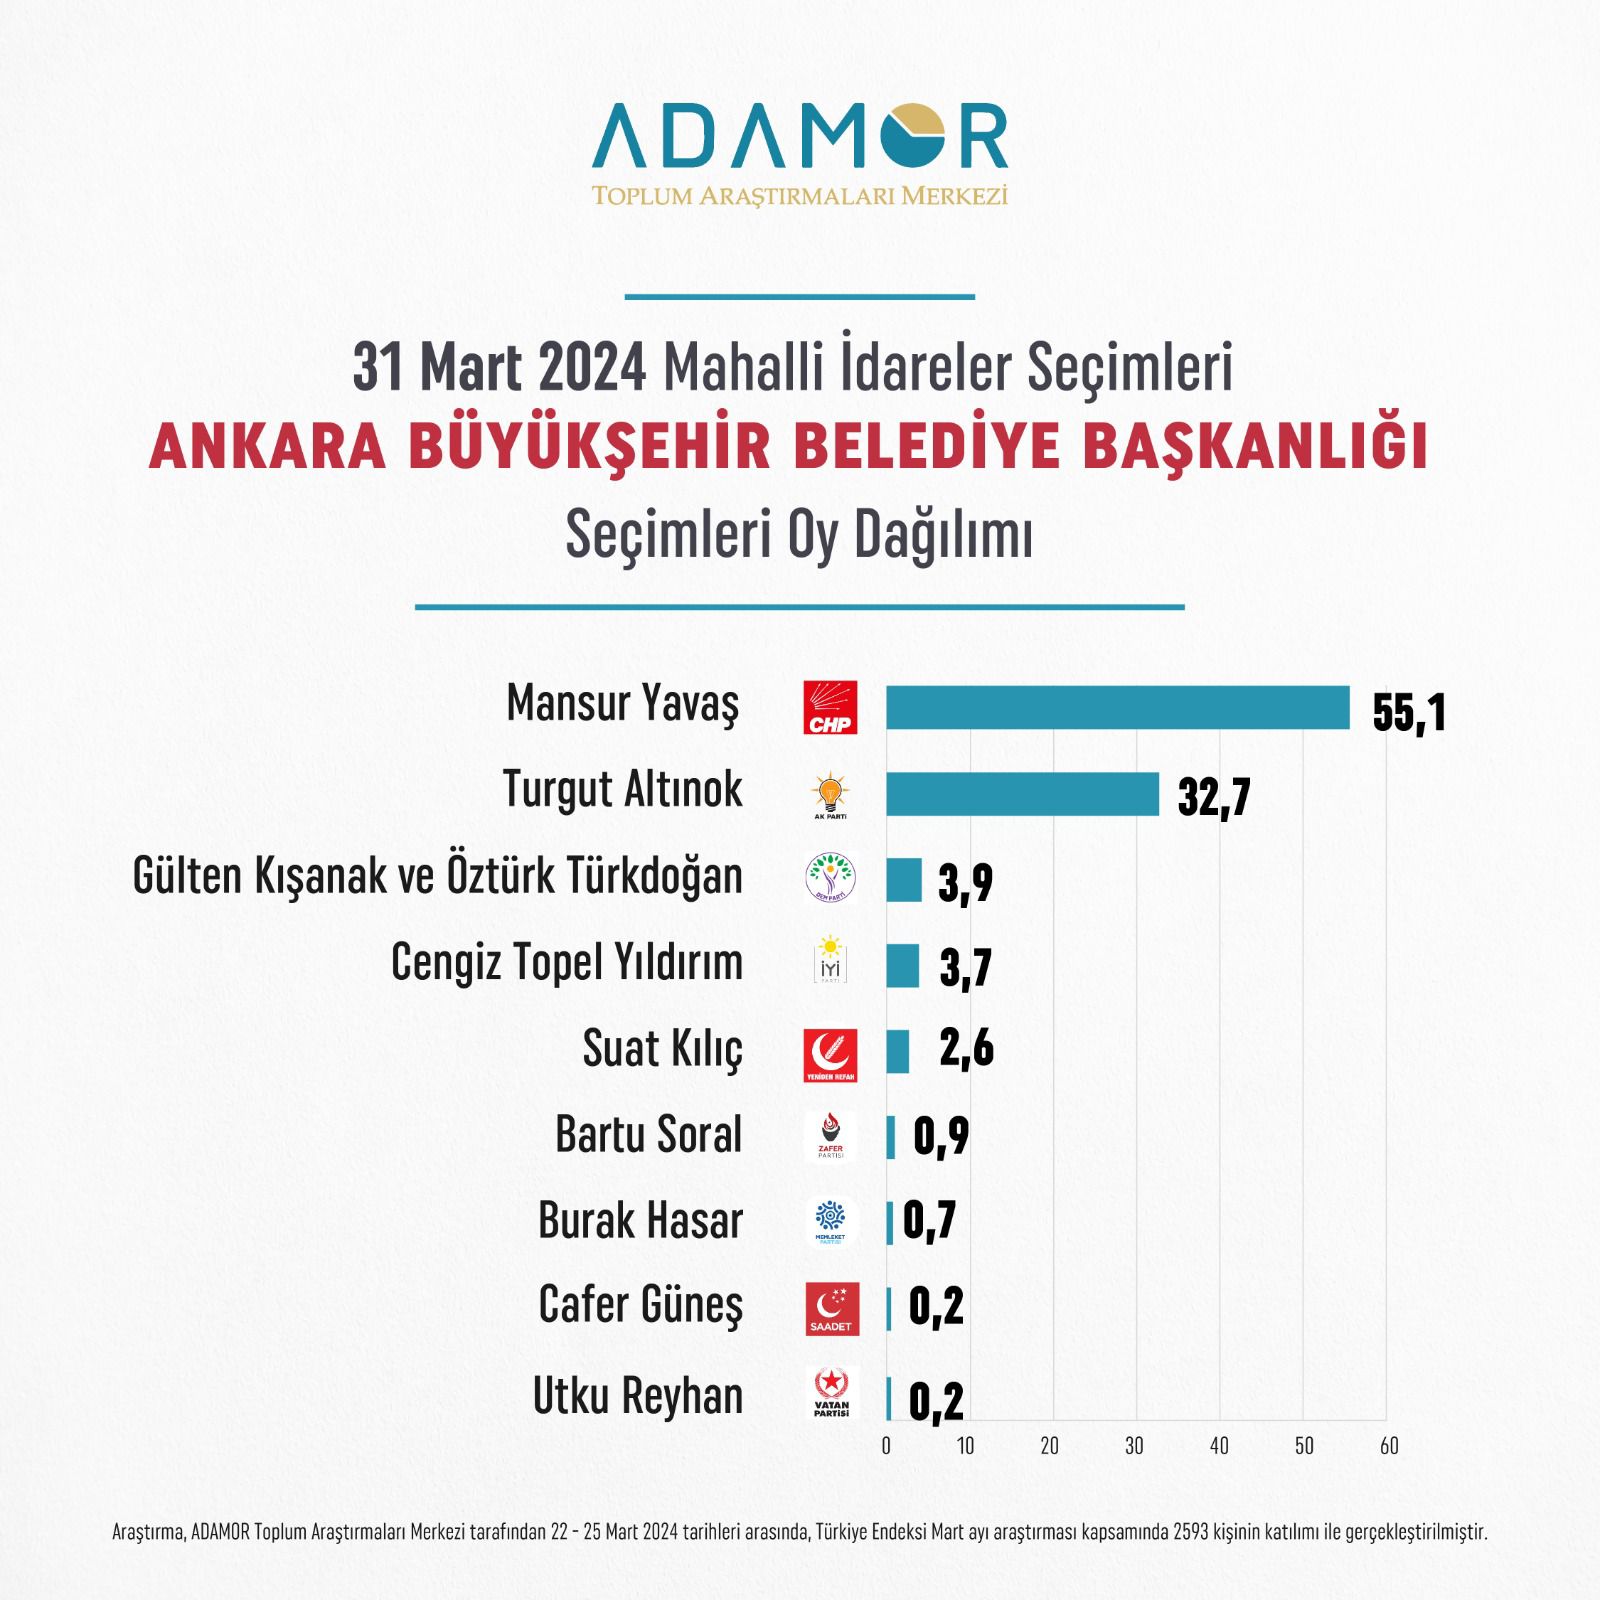 Ankara'da son seçim anketi yayınlandı: Mansur Yavaş ile Turgut Altınok arasındaki fark açılıyor